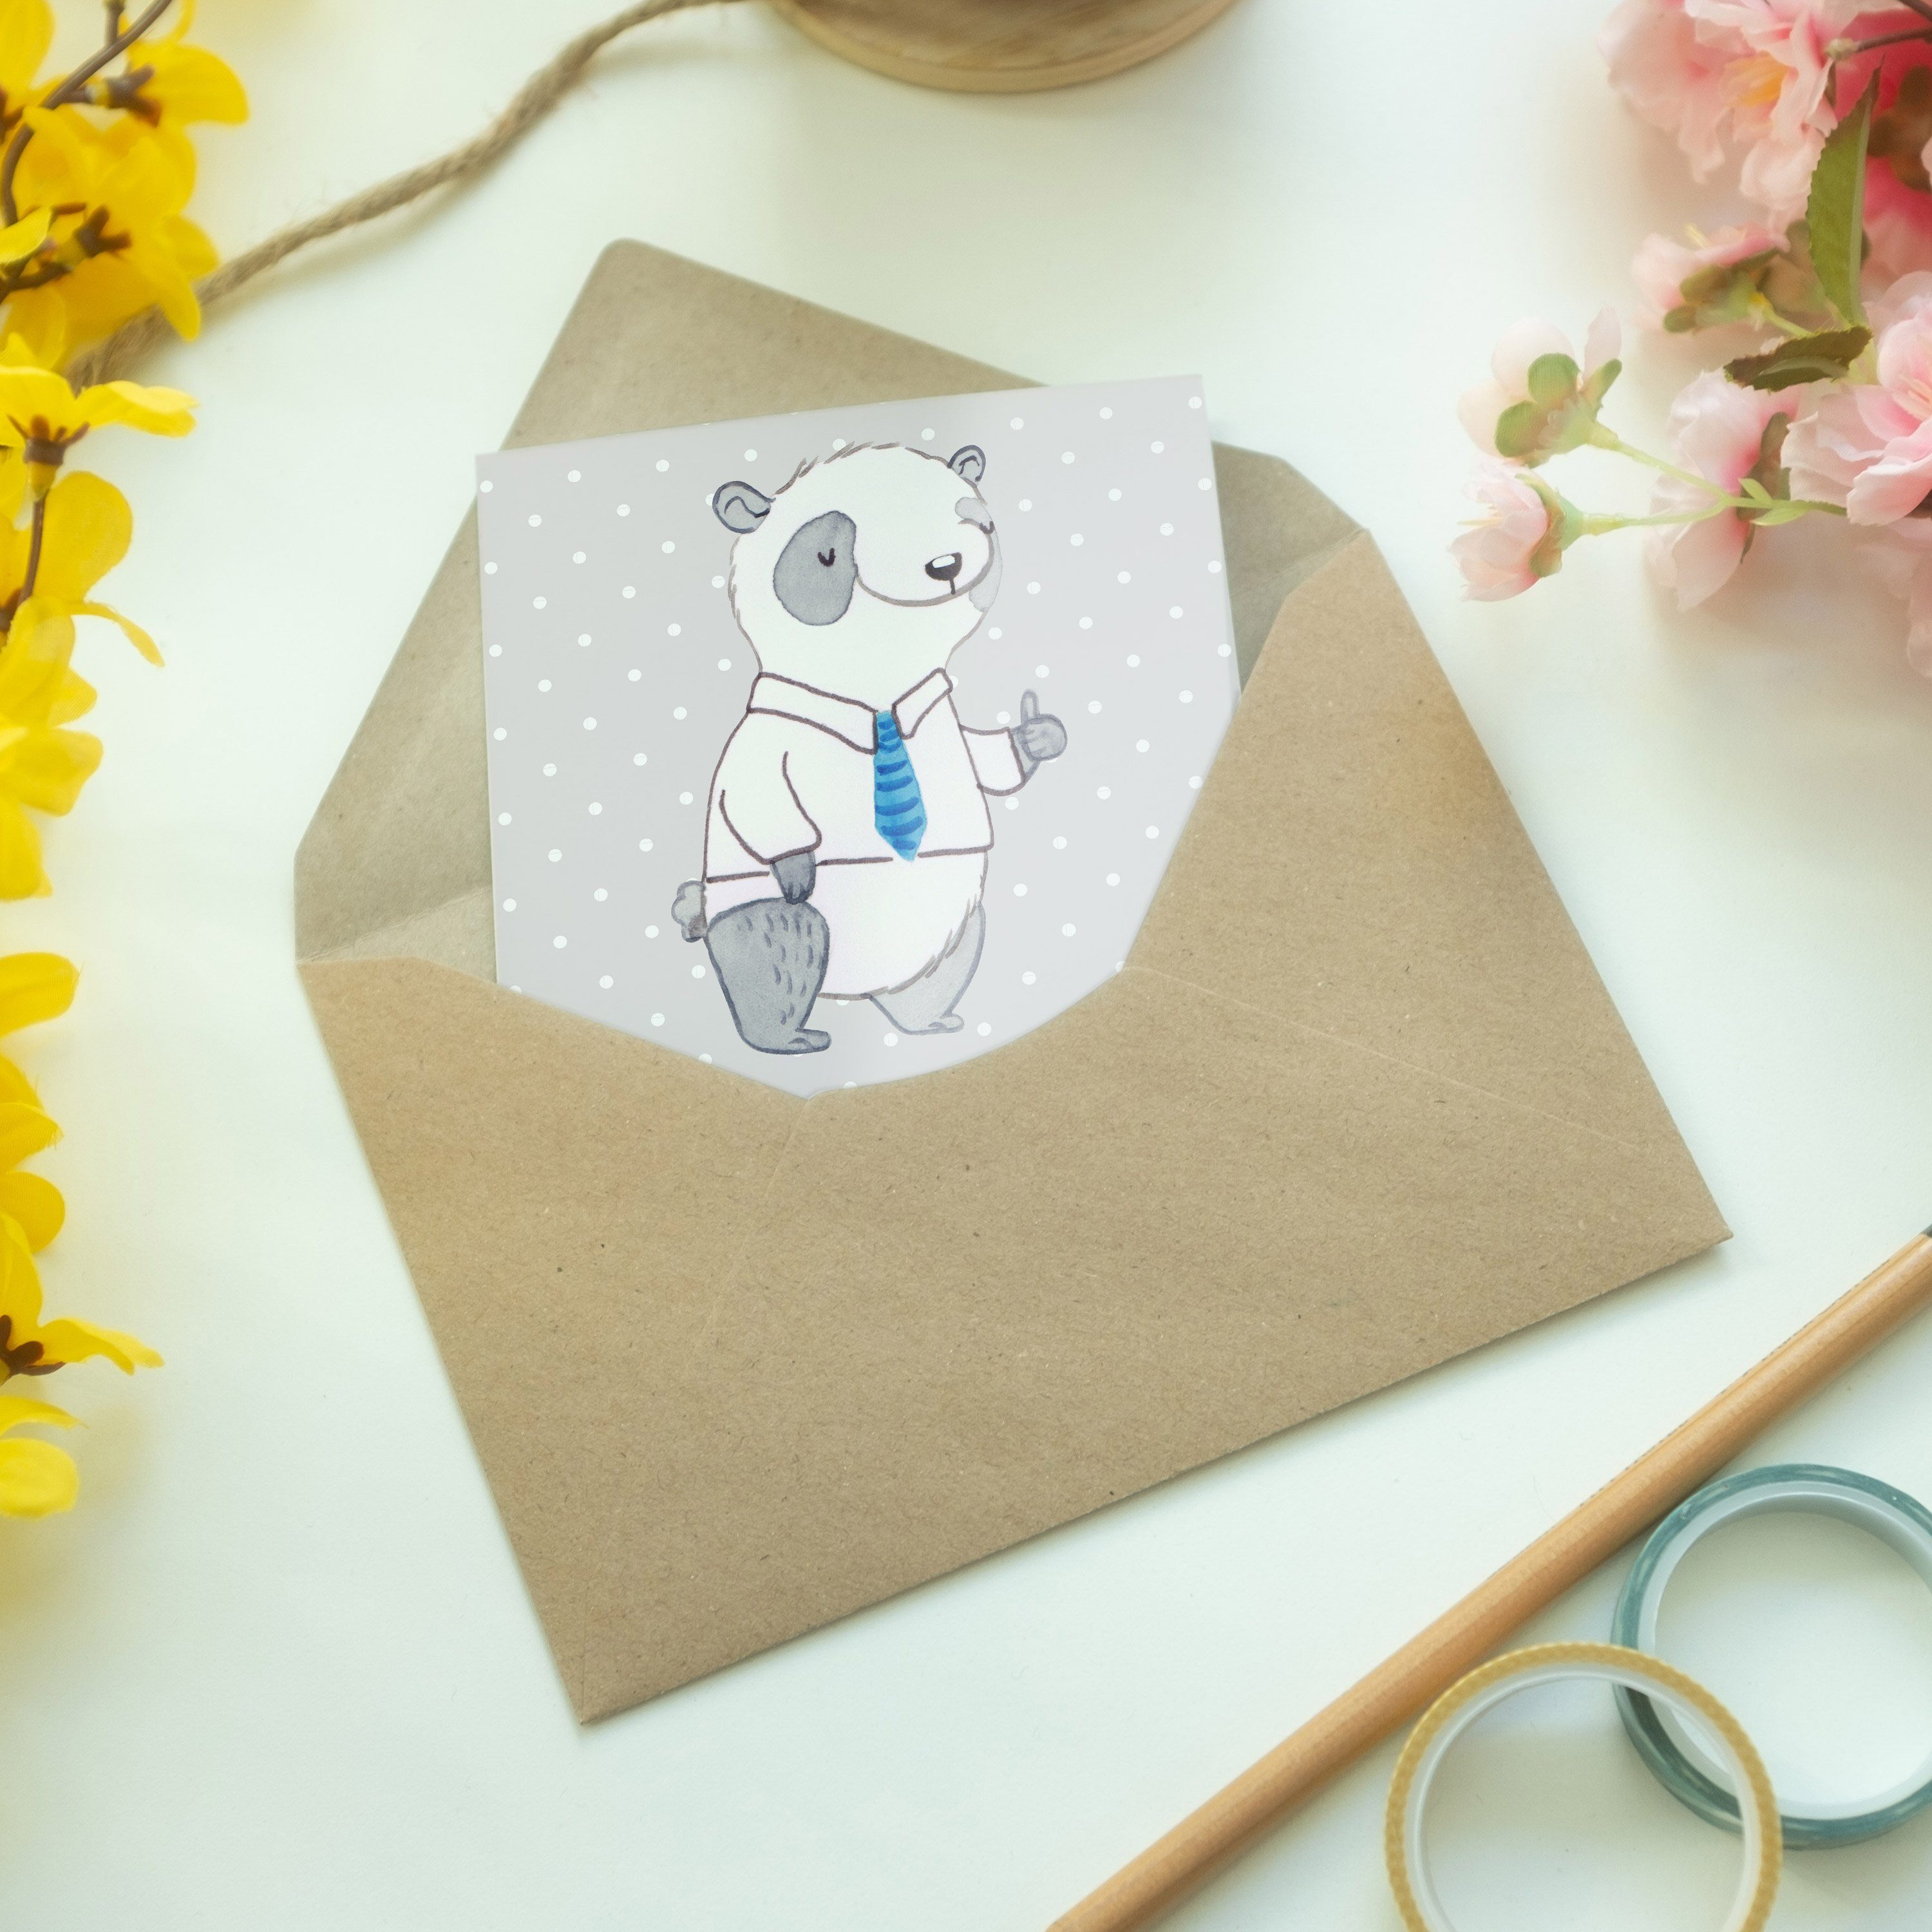 Mr. & Mrs. Geschenk, der Panda Trauzeuge Panda - Grau Welt - Pastell Bester Karte für, Grußkarte